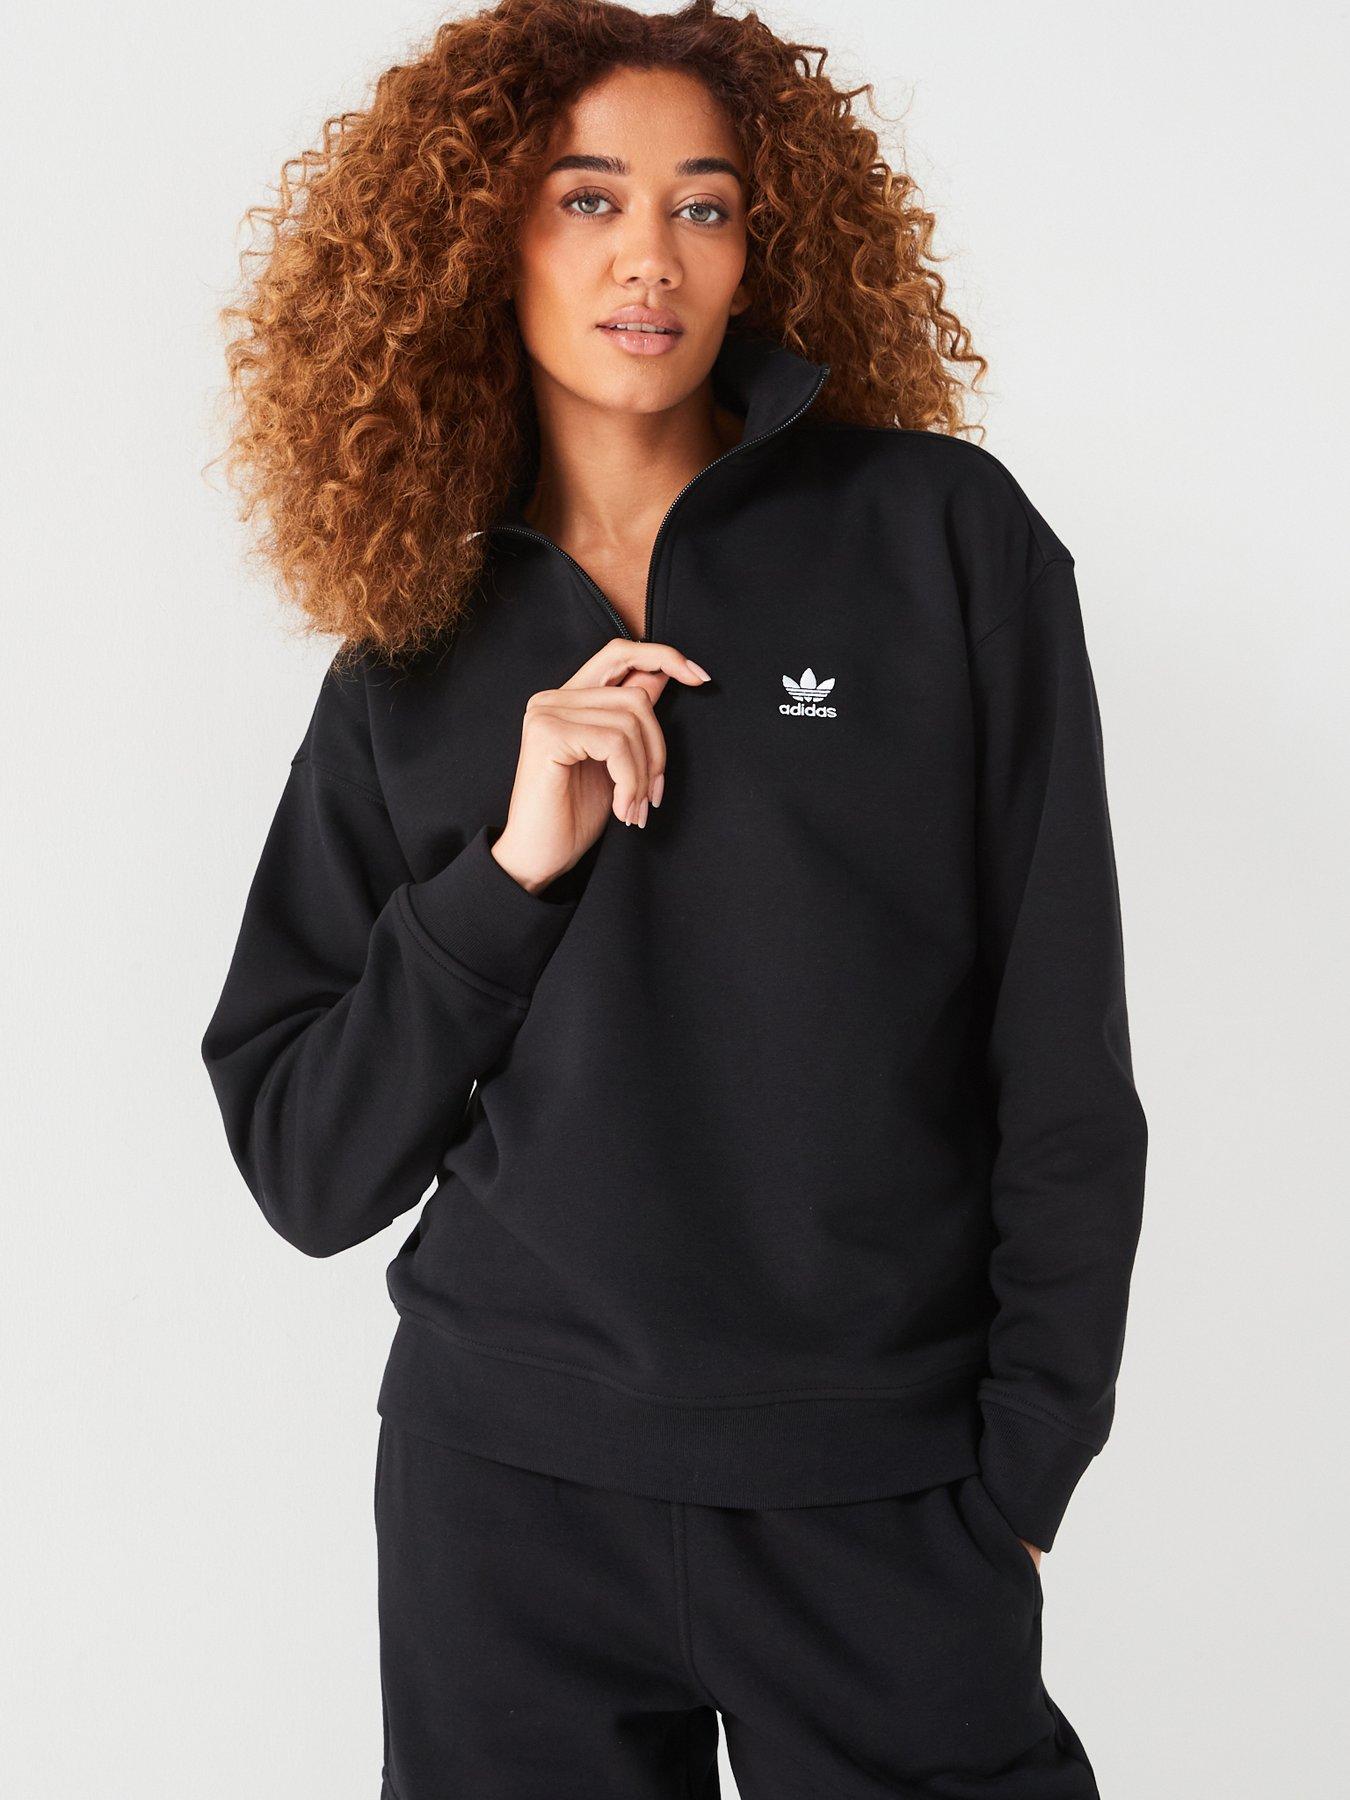 XL, Adidas, Hoodies & sweatshirts, Women